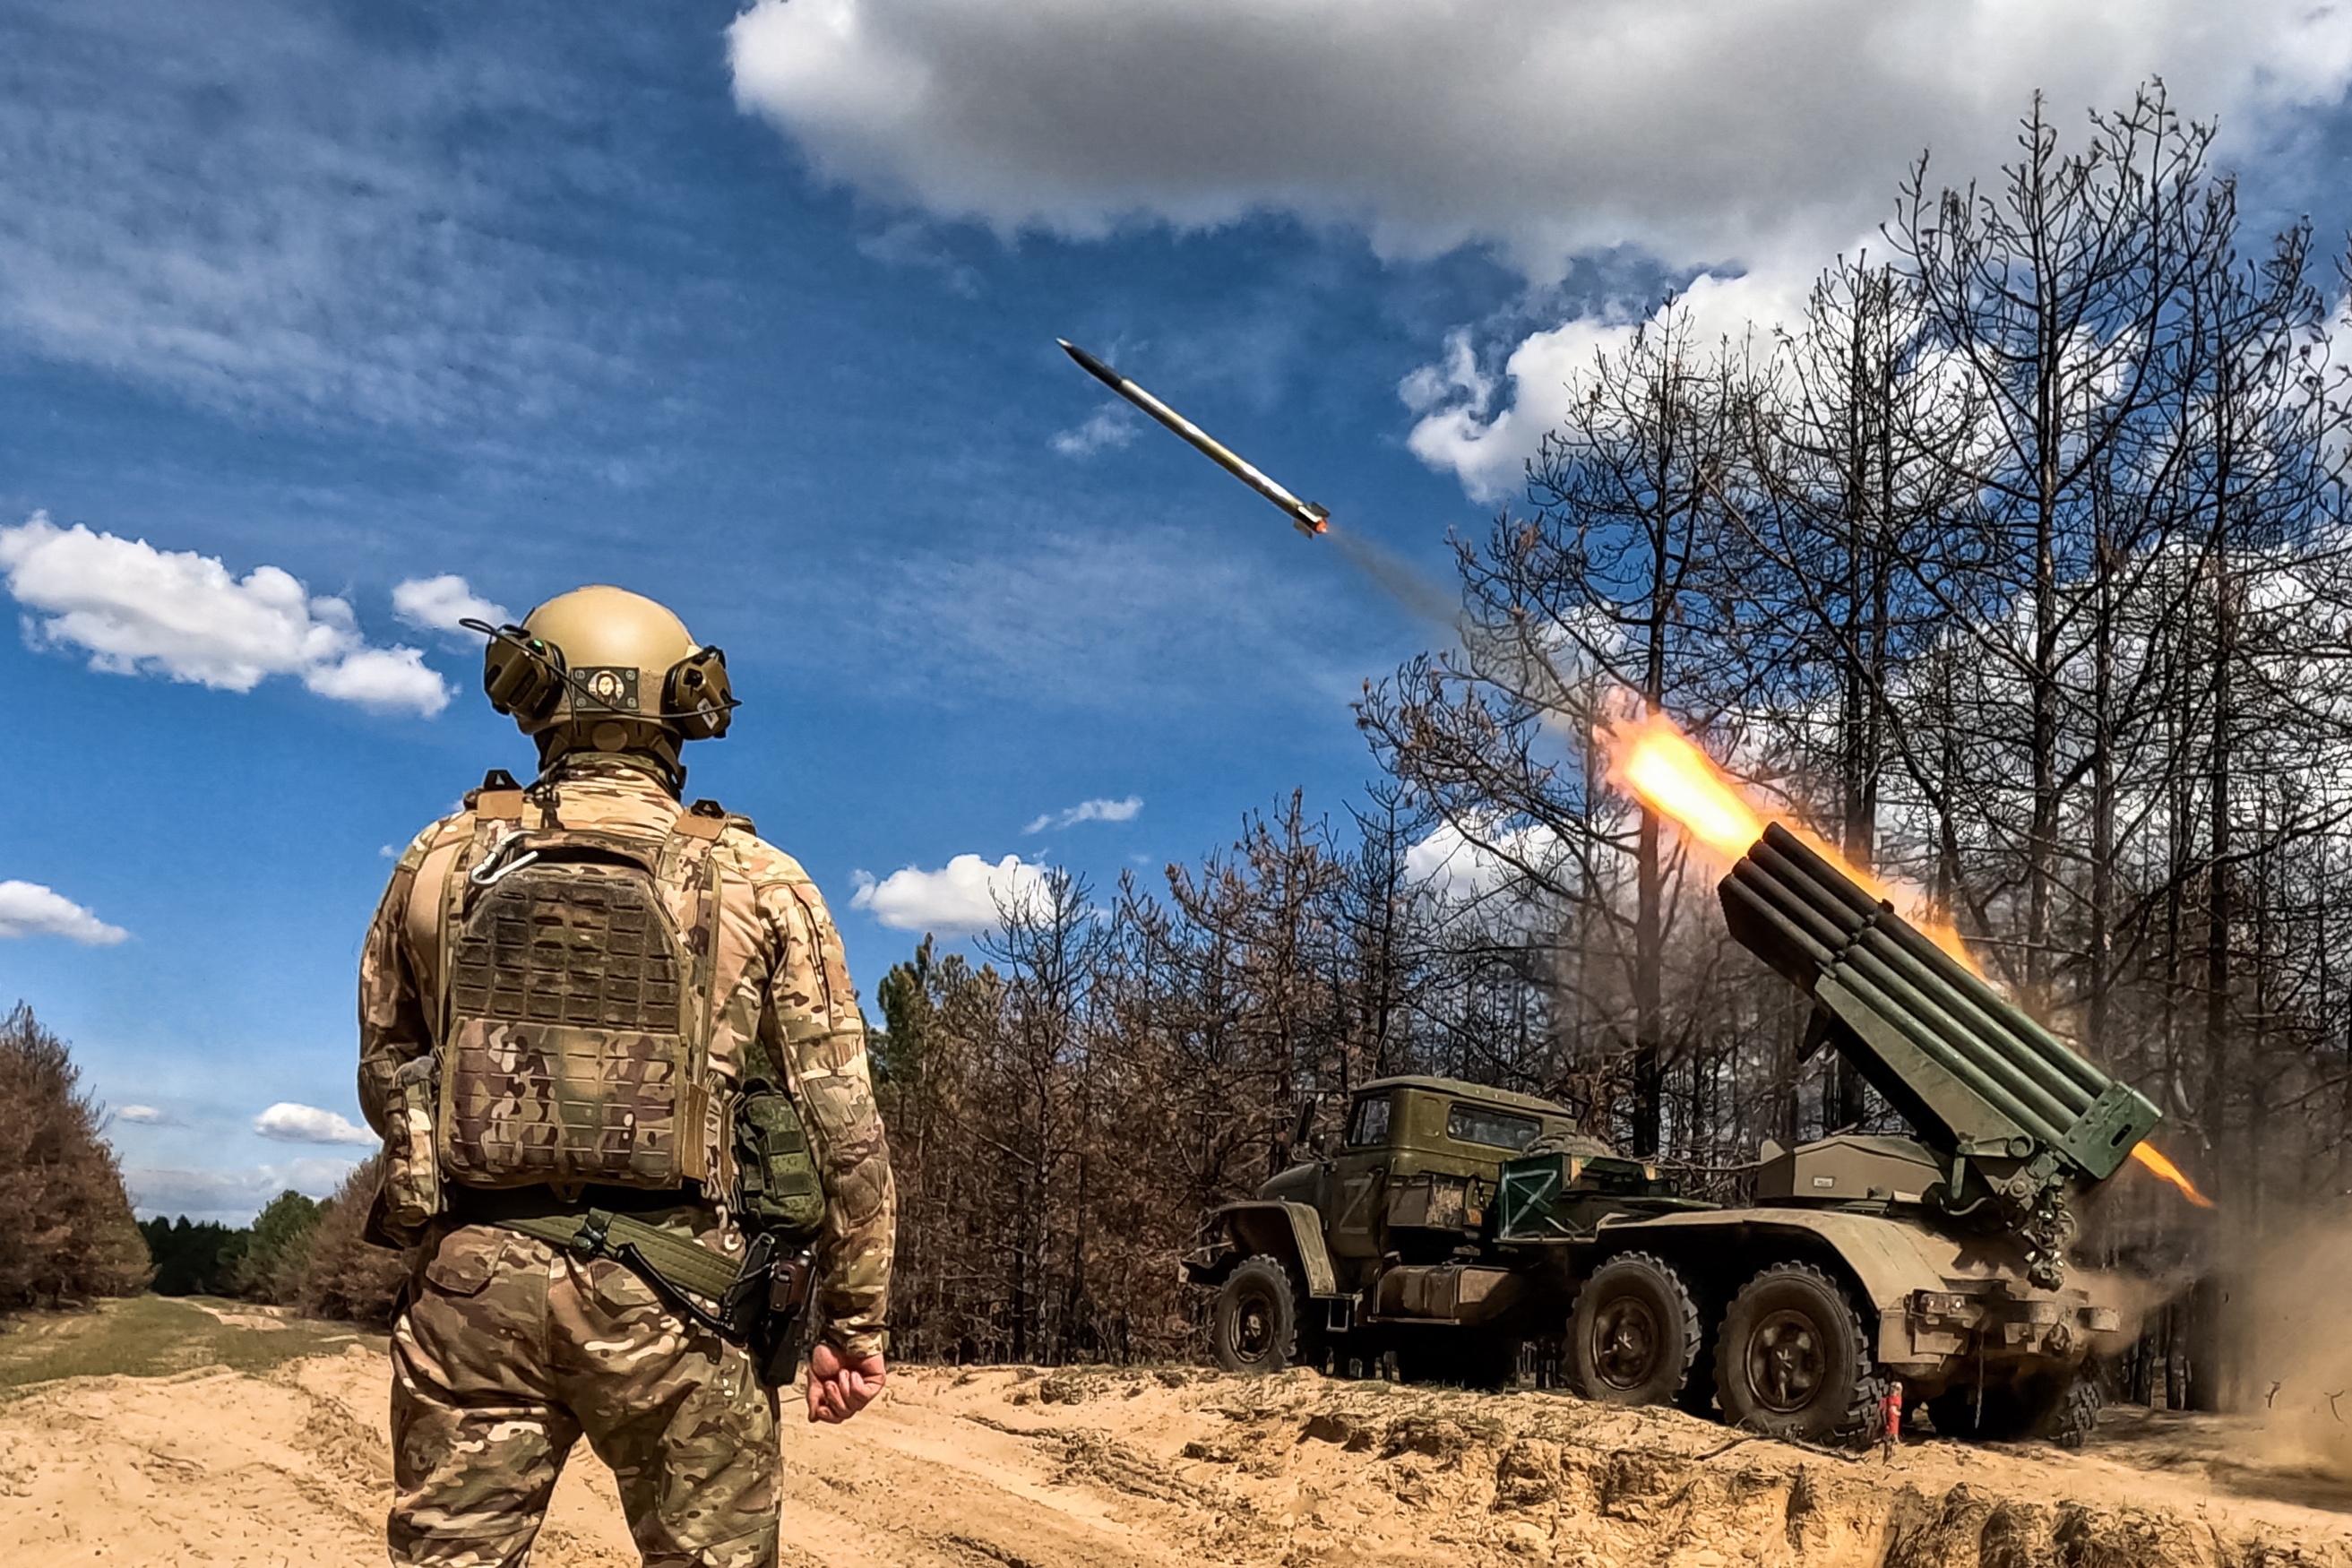 des militaires français en ukraine deviendraient « inévitablement des cibles », prévient la russie